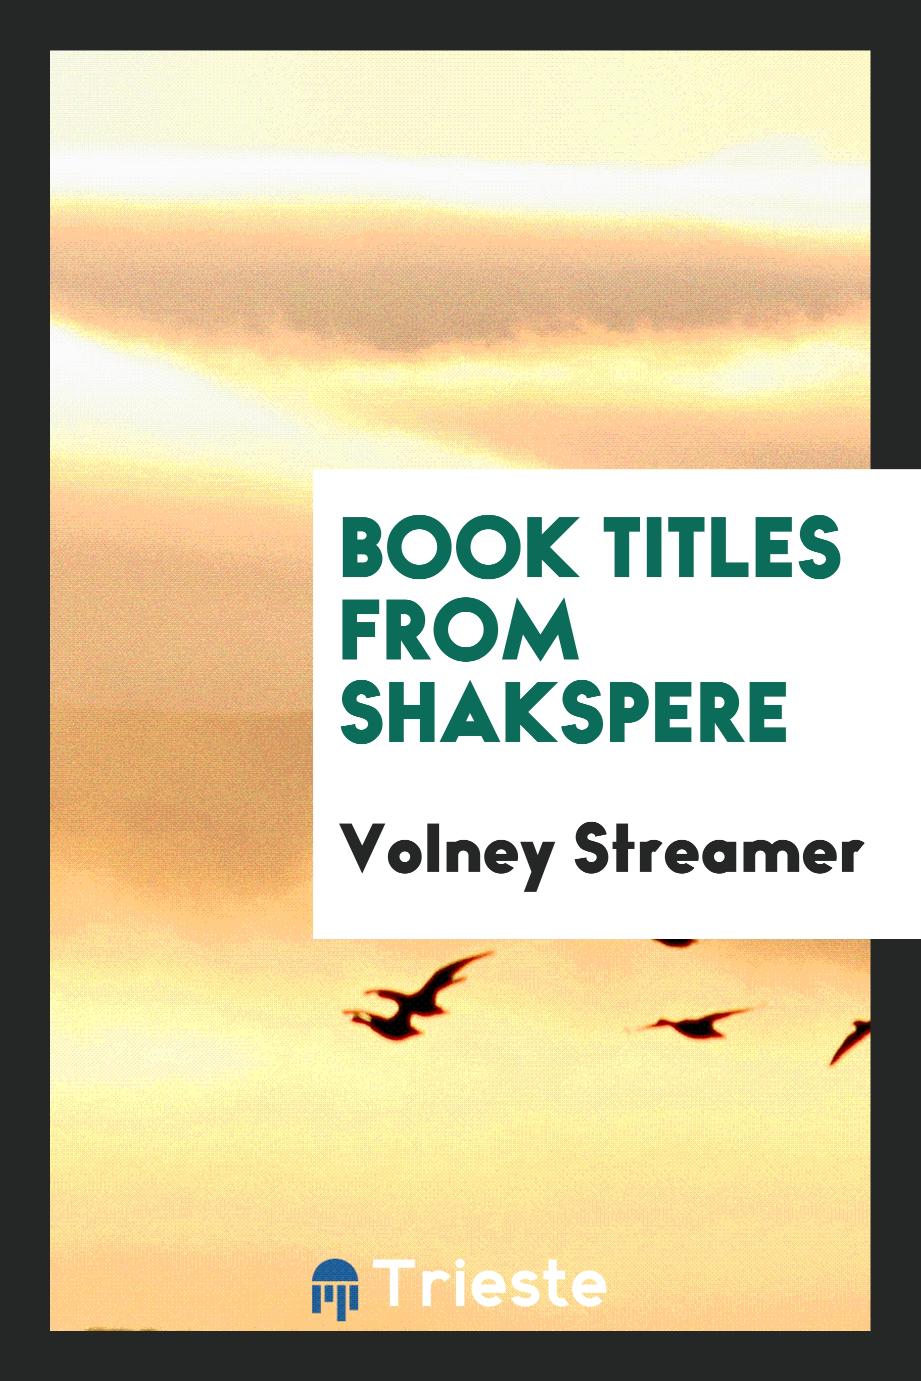 Book Titles from Shakspere